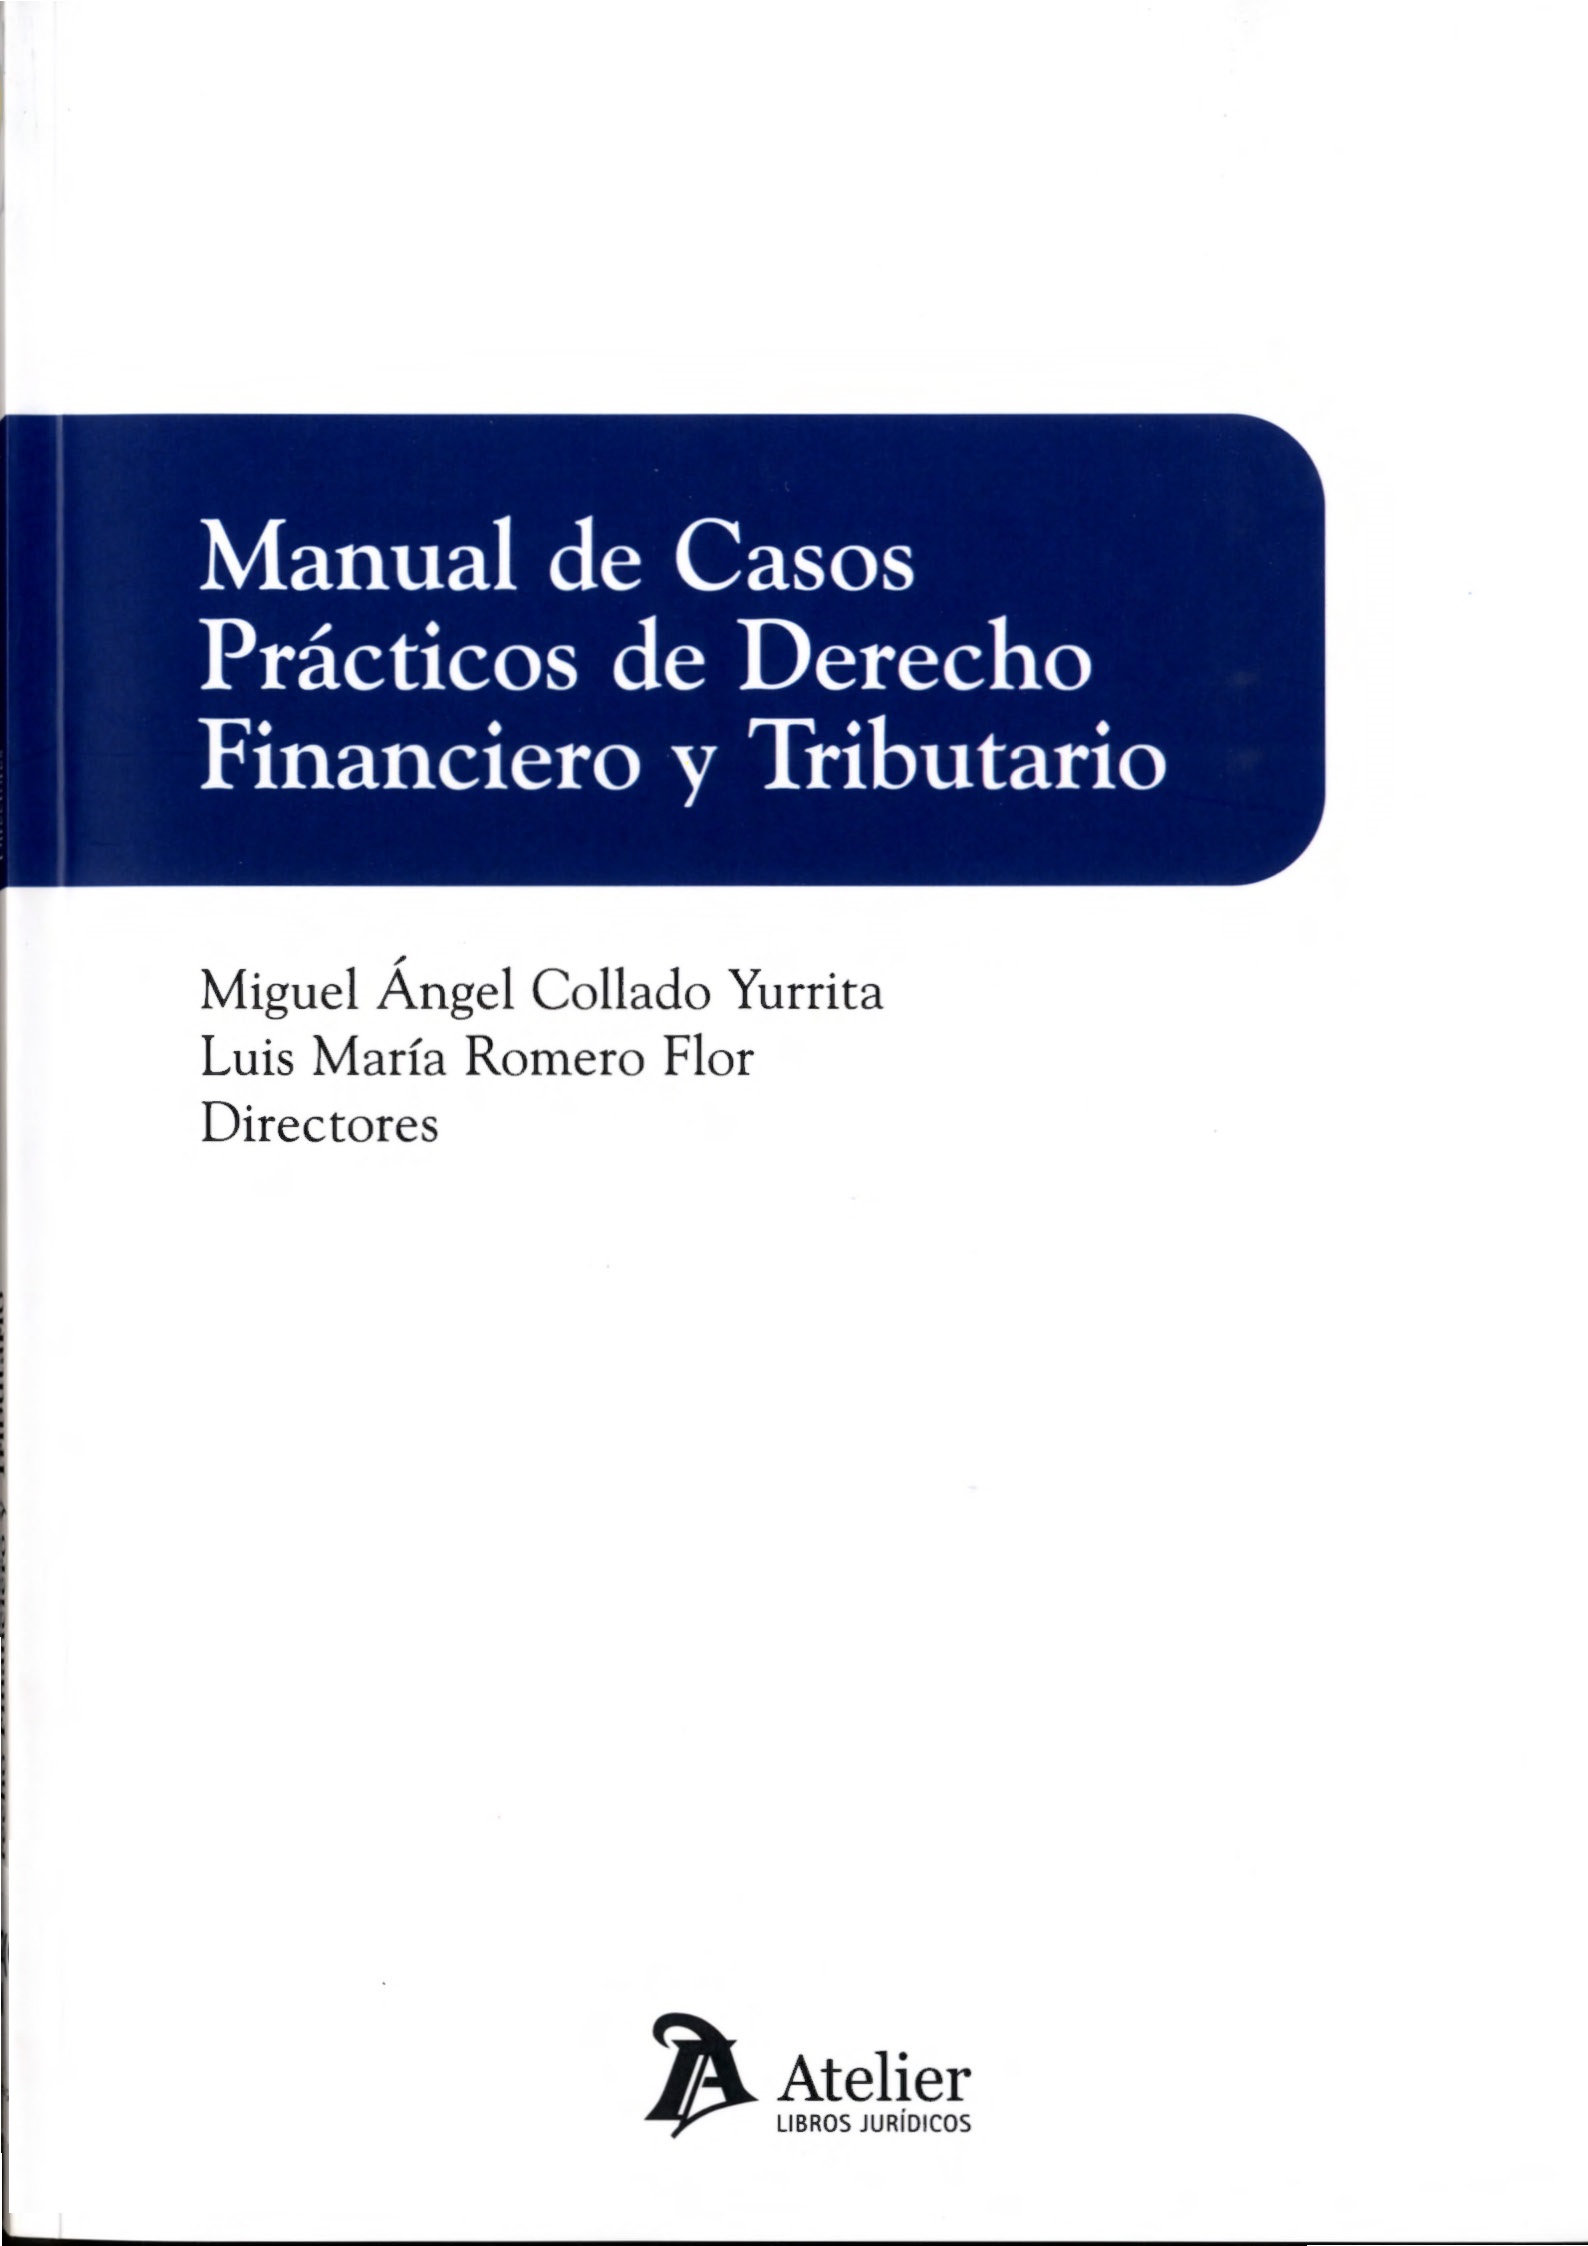 Imagen de portada del libro Manual de Casos Prácticos de Derecho Financiero y Tributario